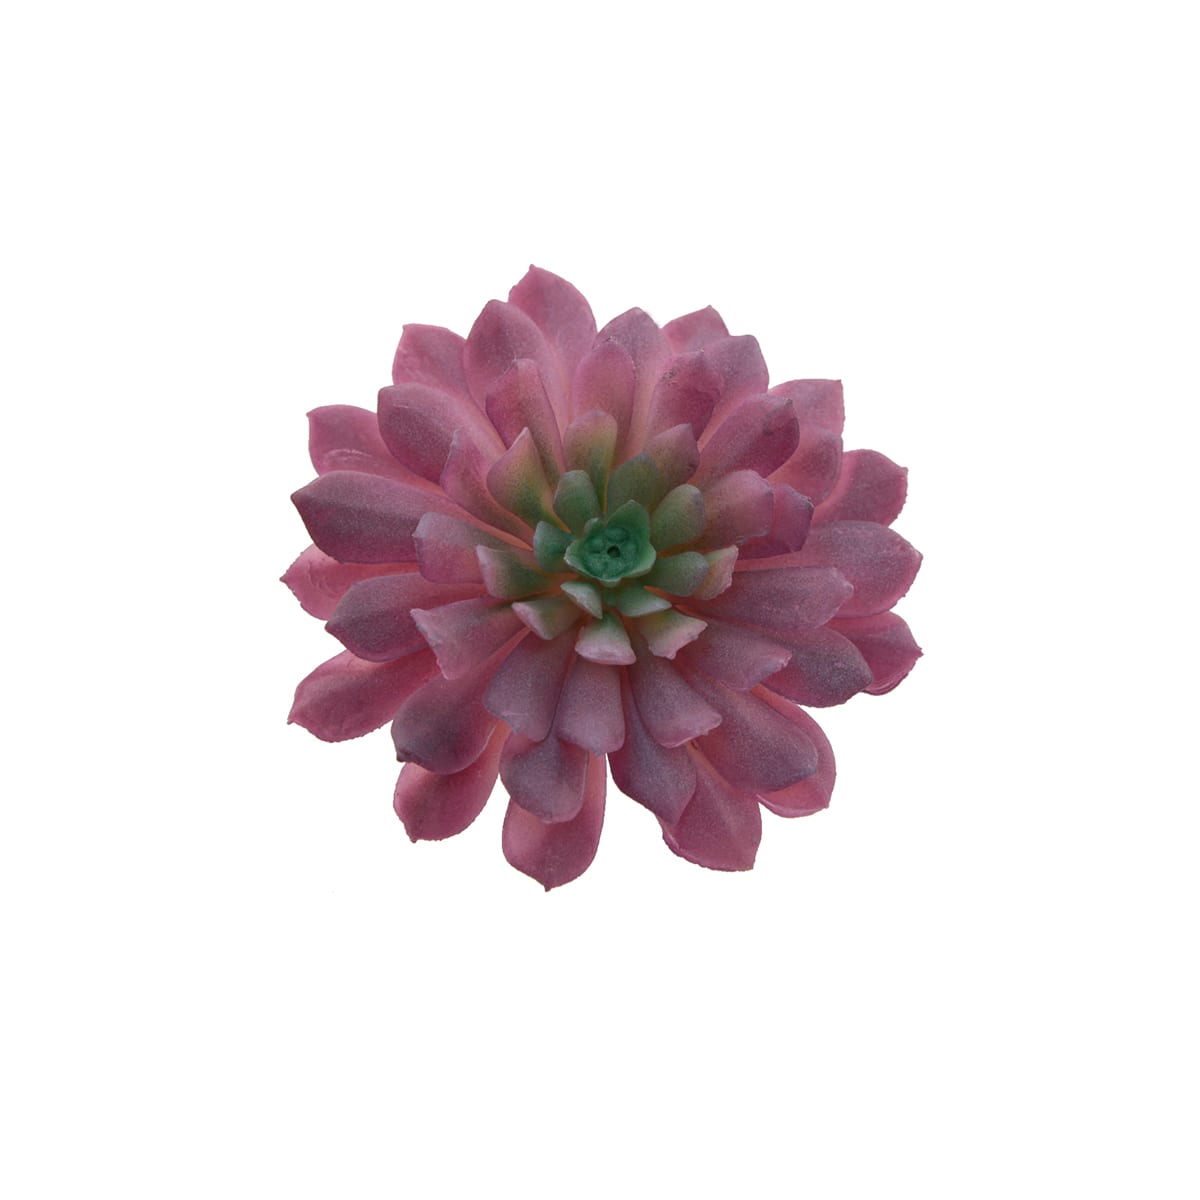 Flora Bunda&#xAE; Red Succulent Pick, 6ct.